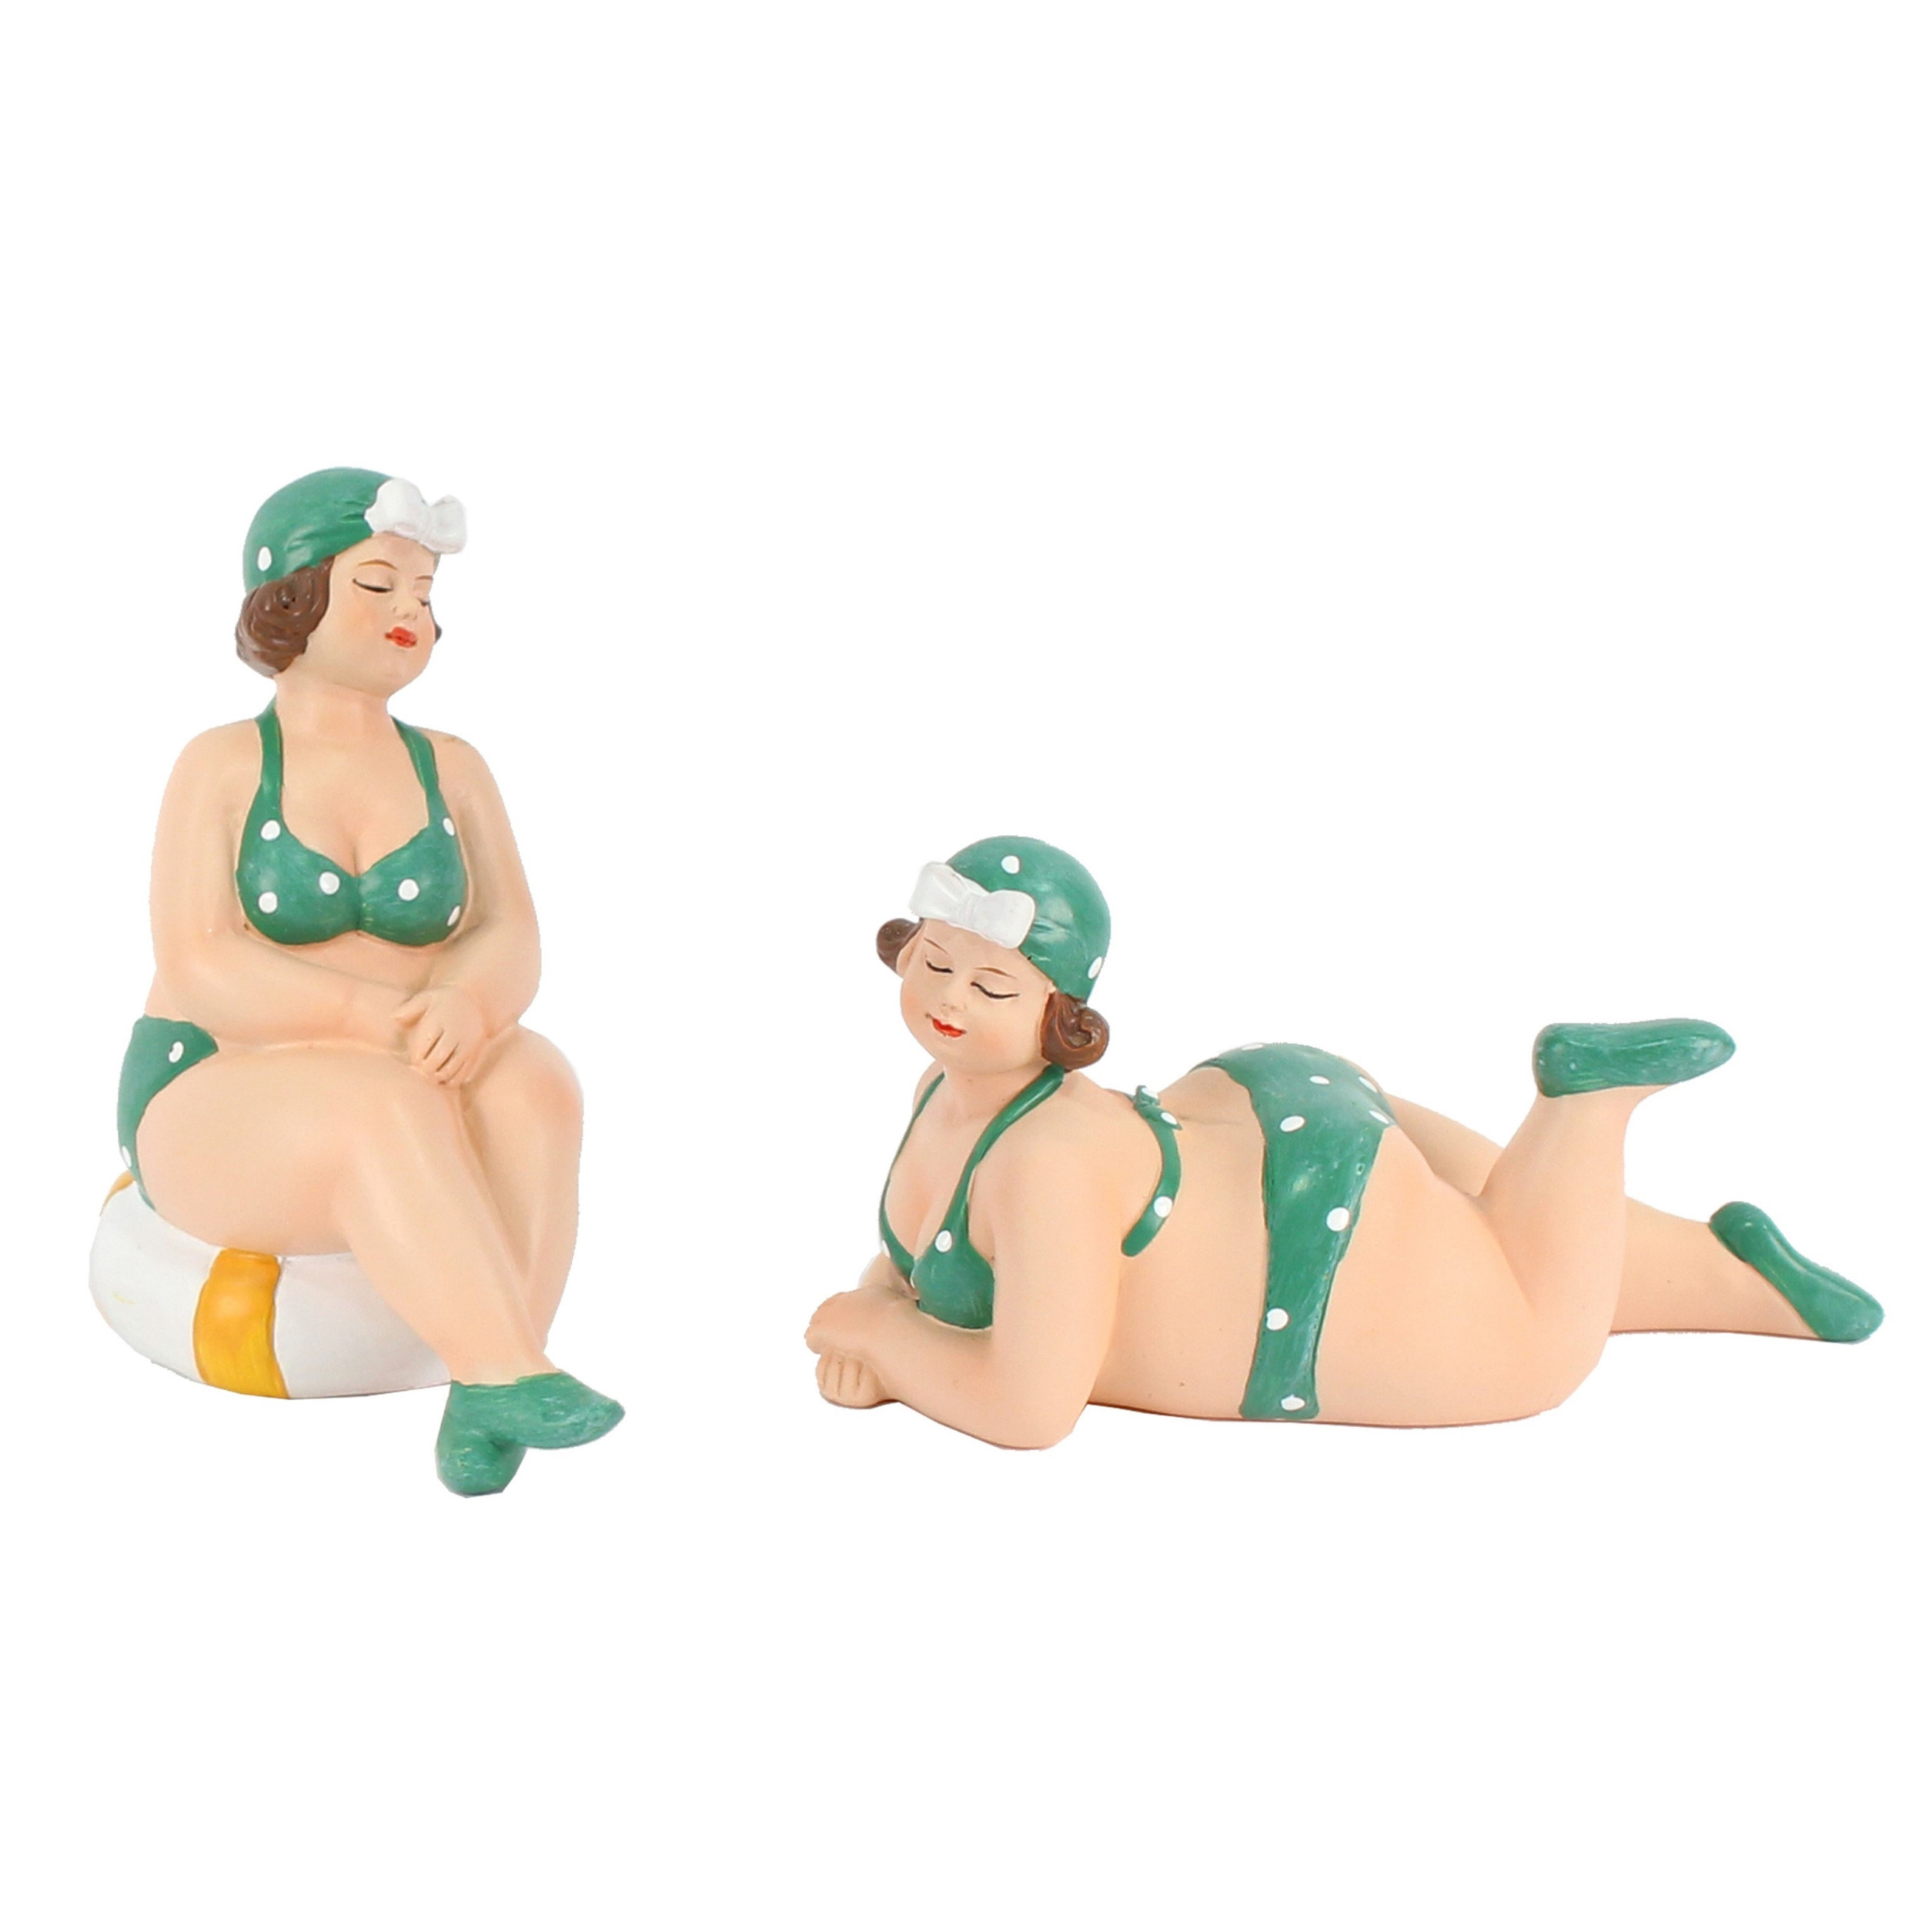 Woonkamer decoratie beeldjes set van 2 dikke dames groen badpak 11 cm